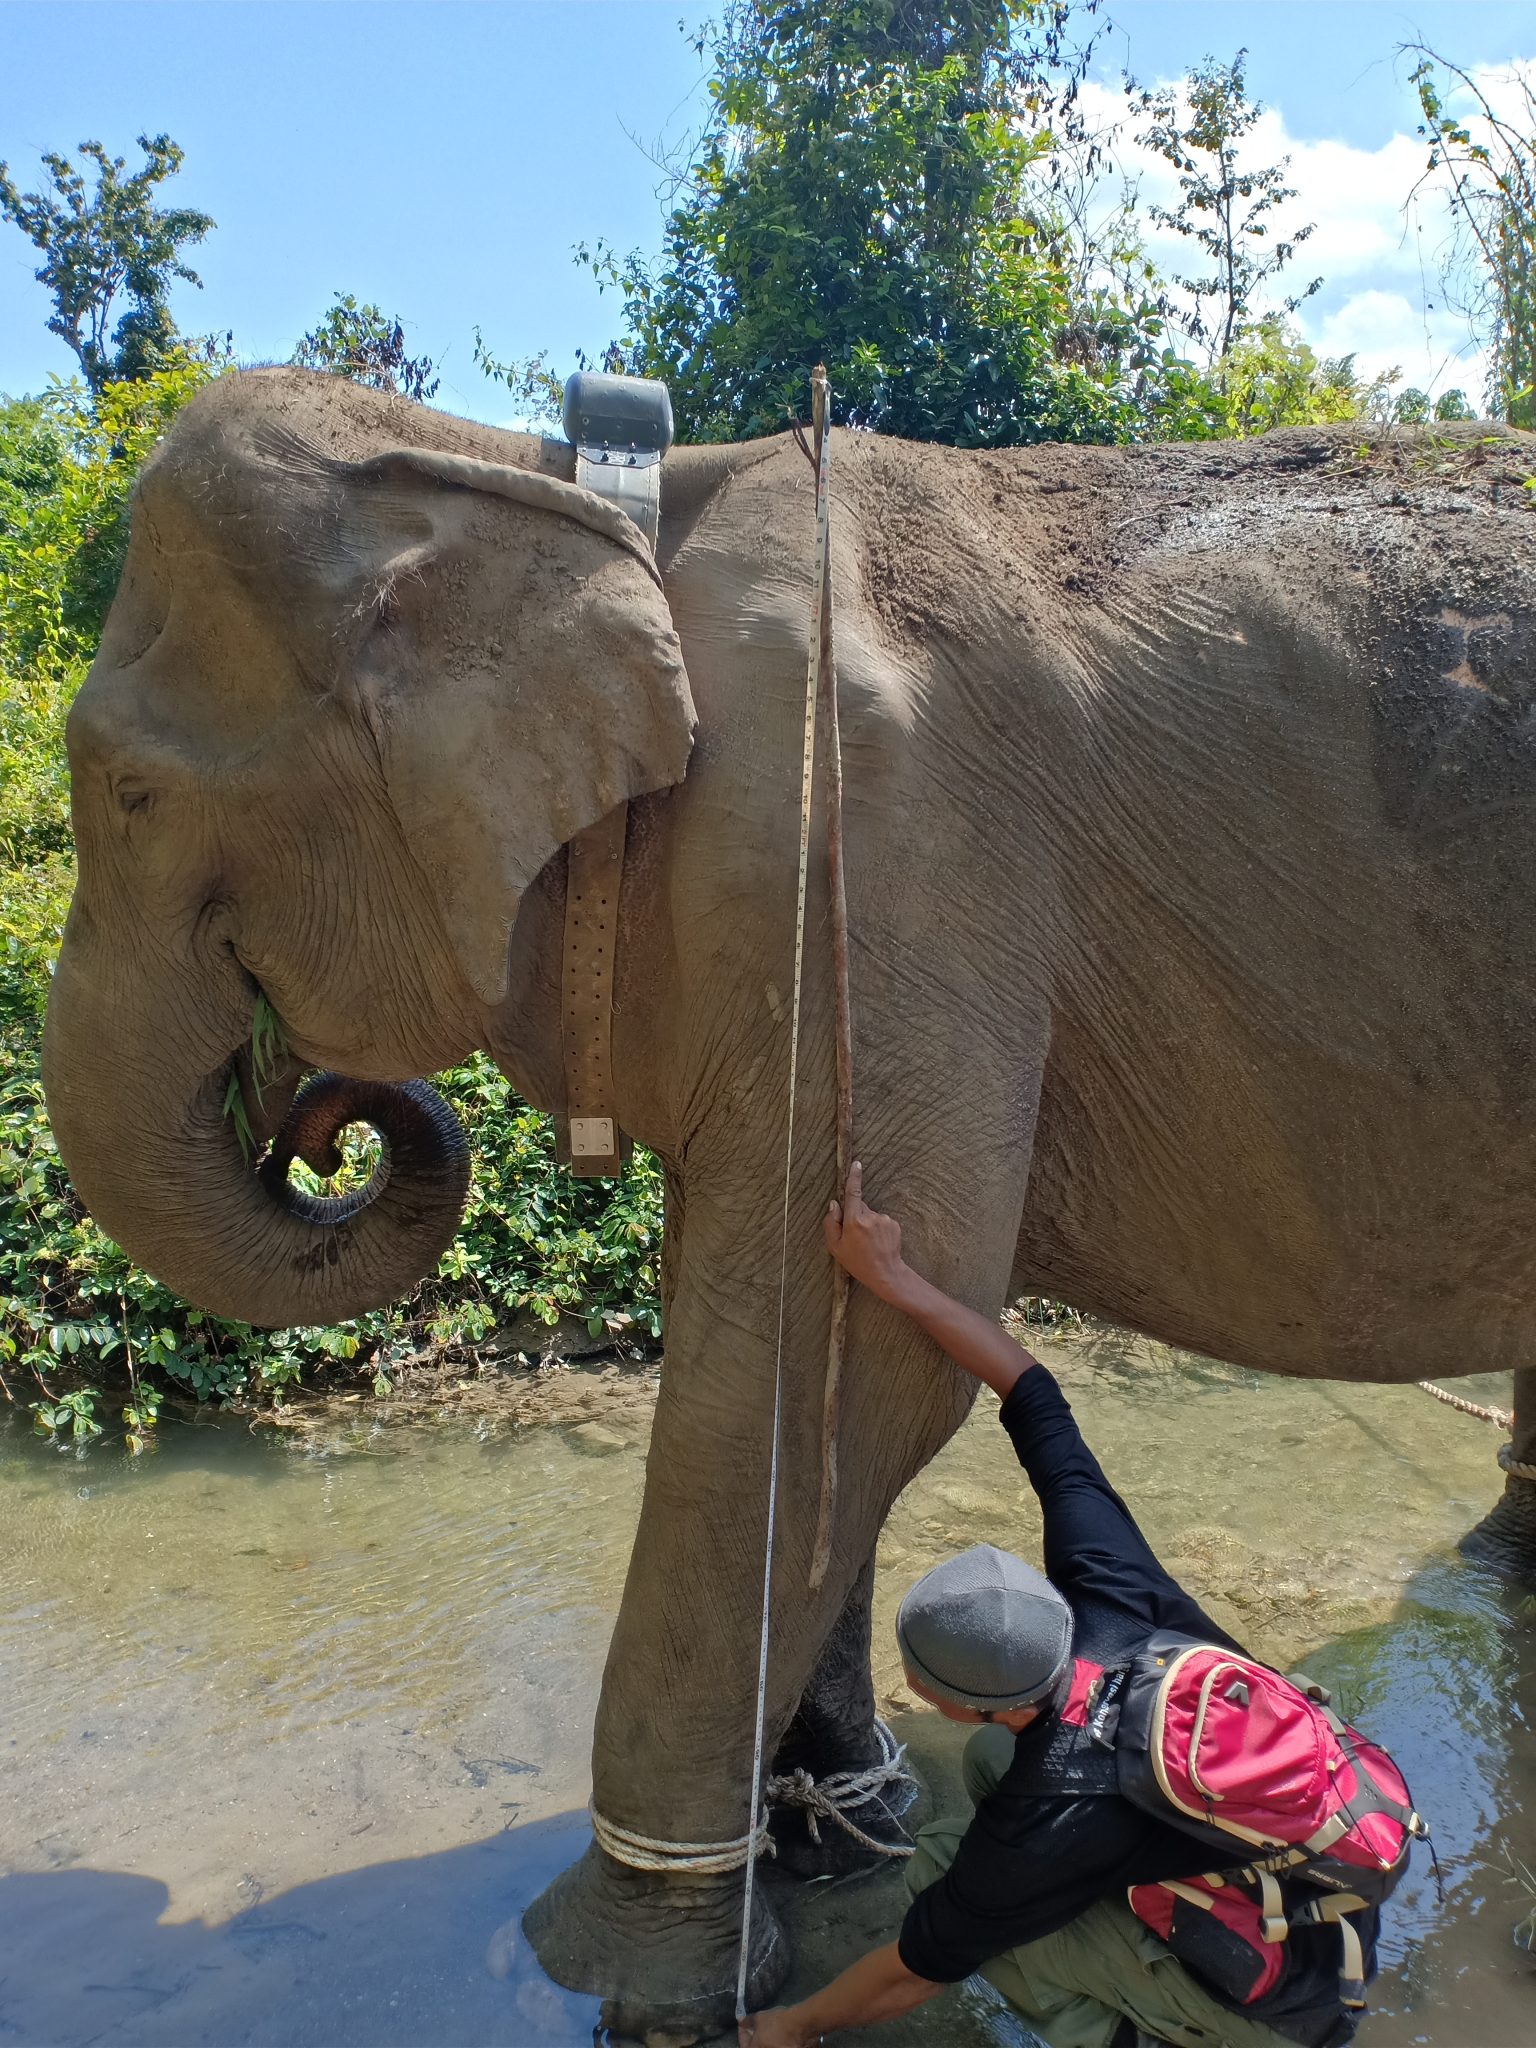 BKSDA Pasang GPS Collar pada Gajah Terluka di Gunung Biram